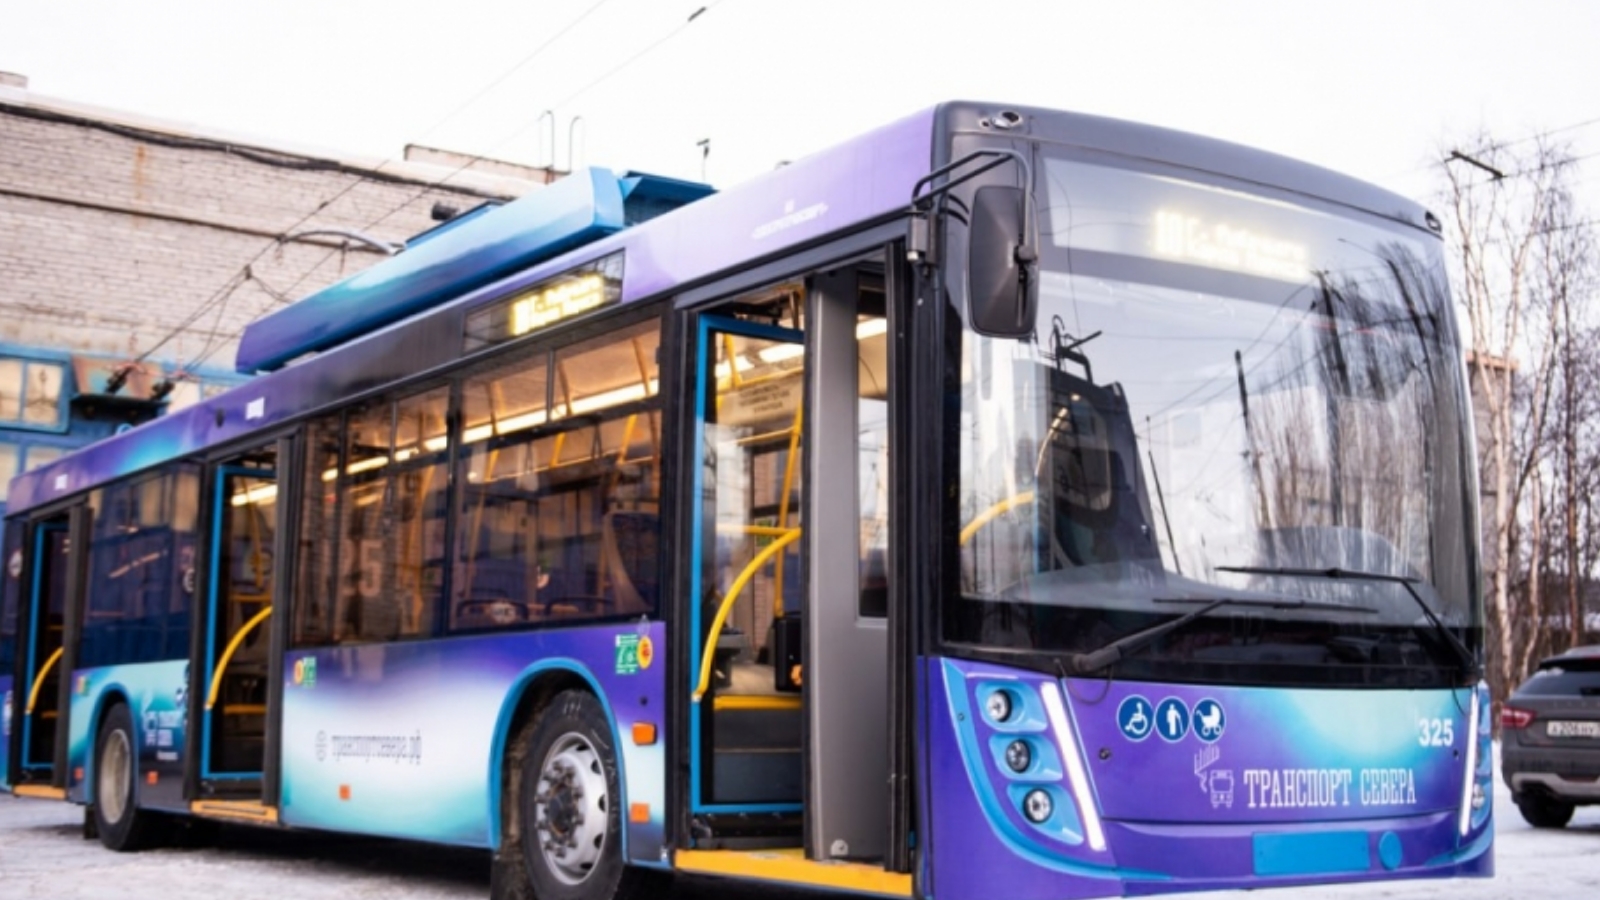 Мурманск получит ещё 20 новых троллейбусов и автобусов